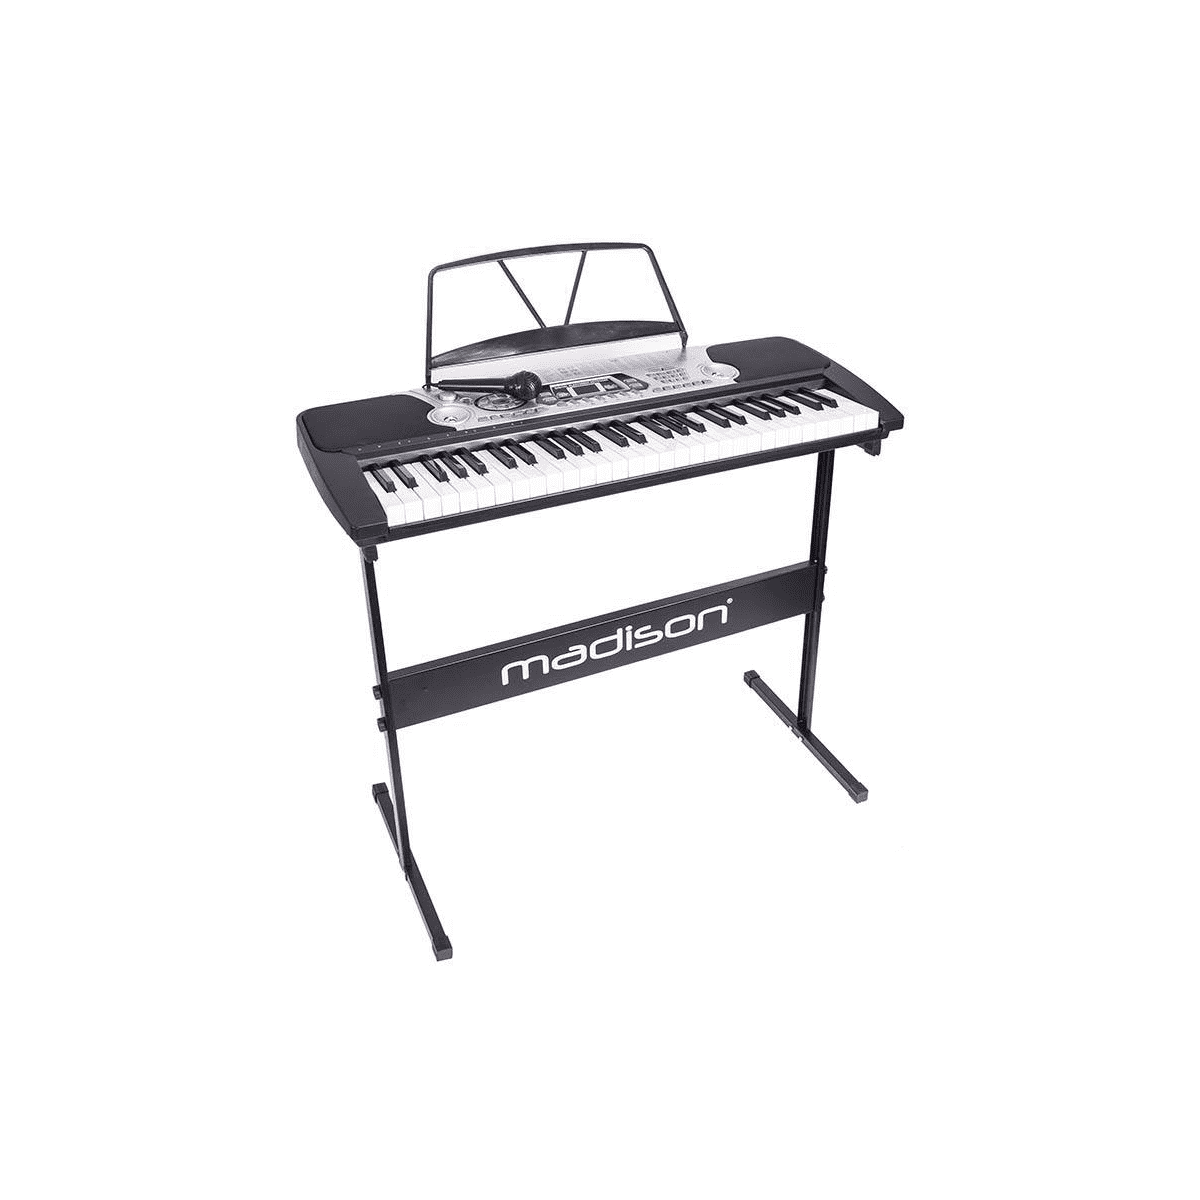 Claviers arrangeurs - Madison - MEK54100-PACK